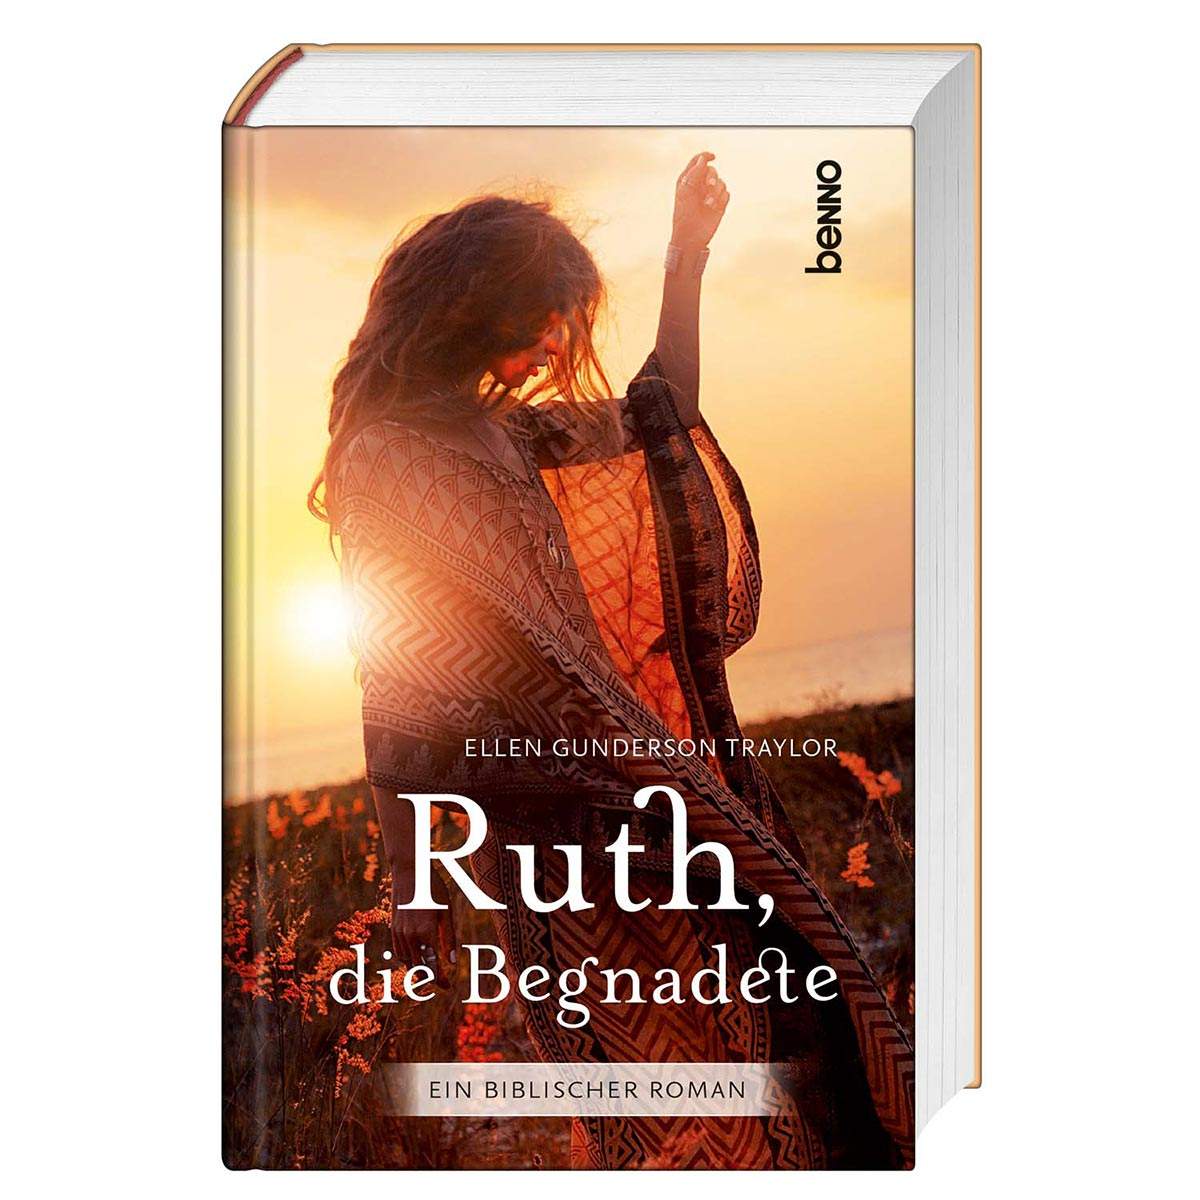 Ruth die Begnadete - Ein biblischer Roman-Benno-Bücher,Geschenkideen,Muttertag